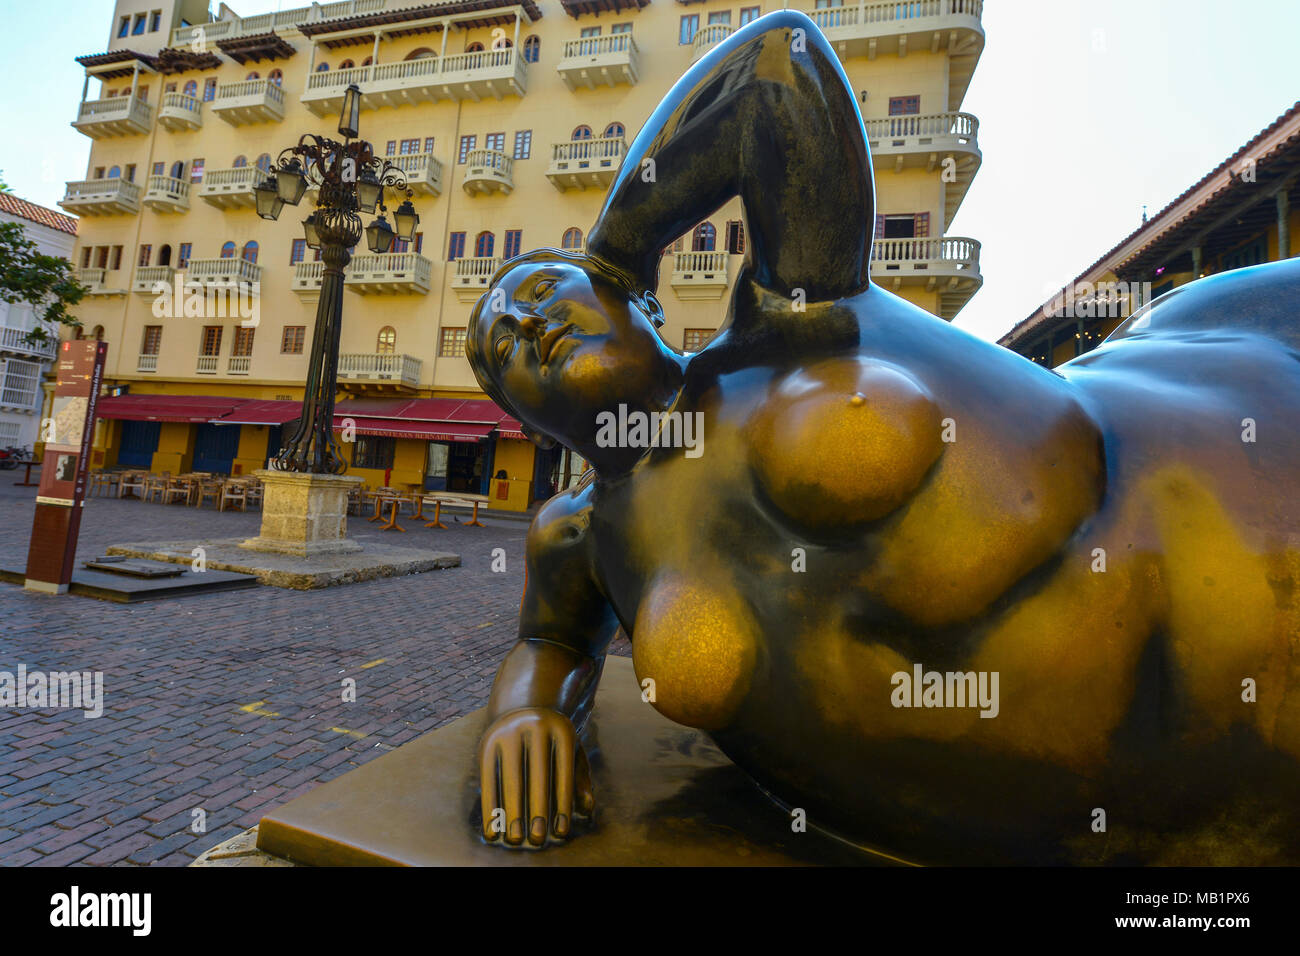 Cartagena, Kolumbien - August 3, 2017: Statue von Fernando Botero, auf einer Straße in Cartagena in Kolumbien. Stockfoto